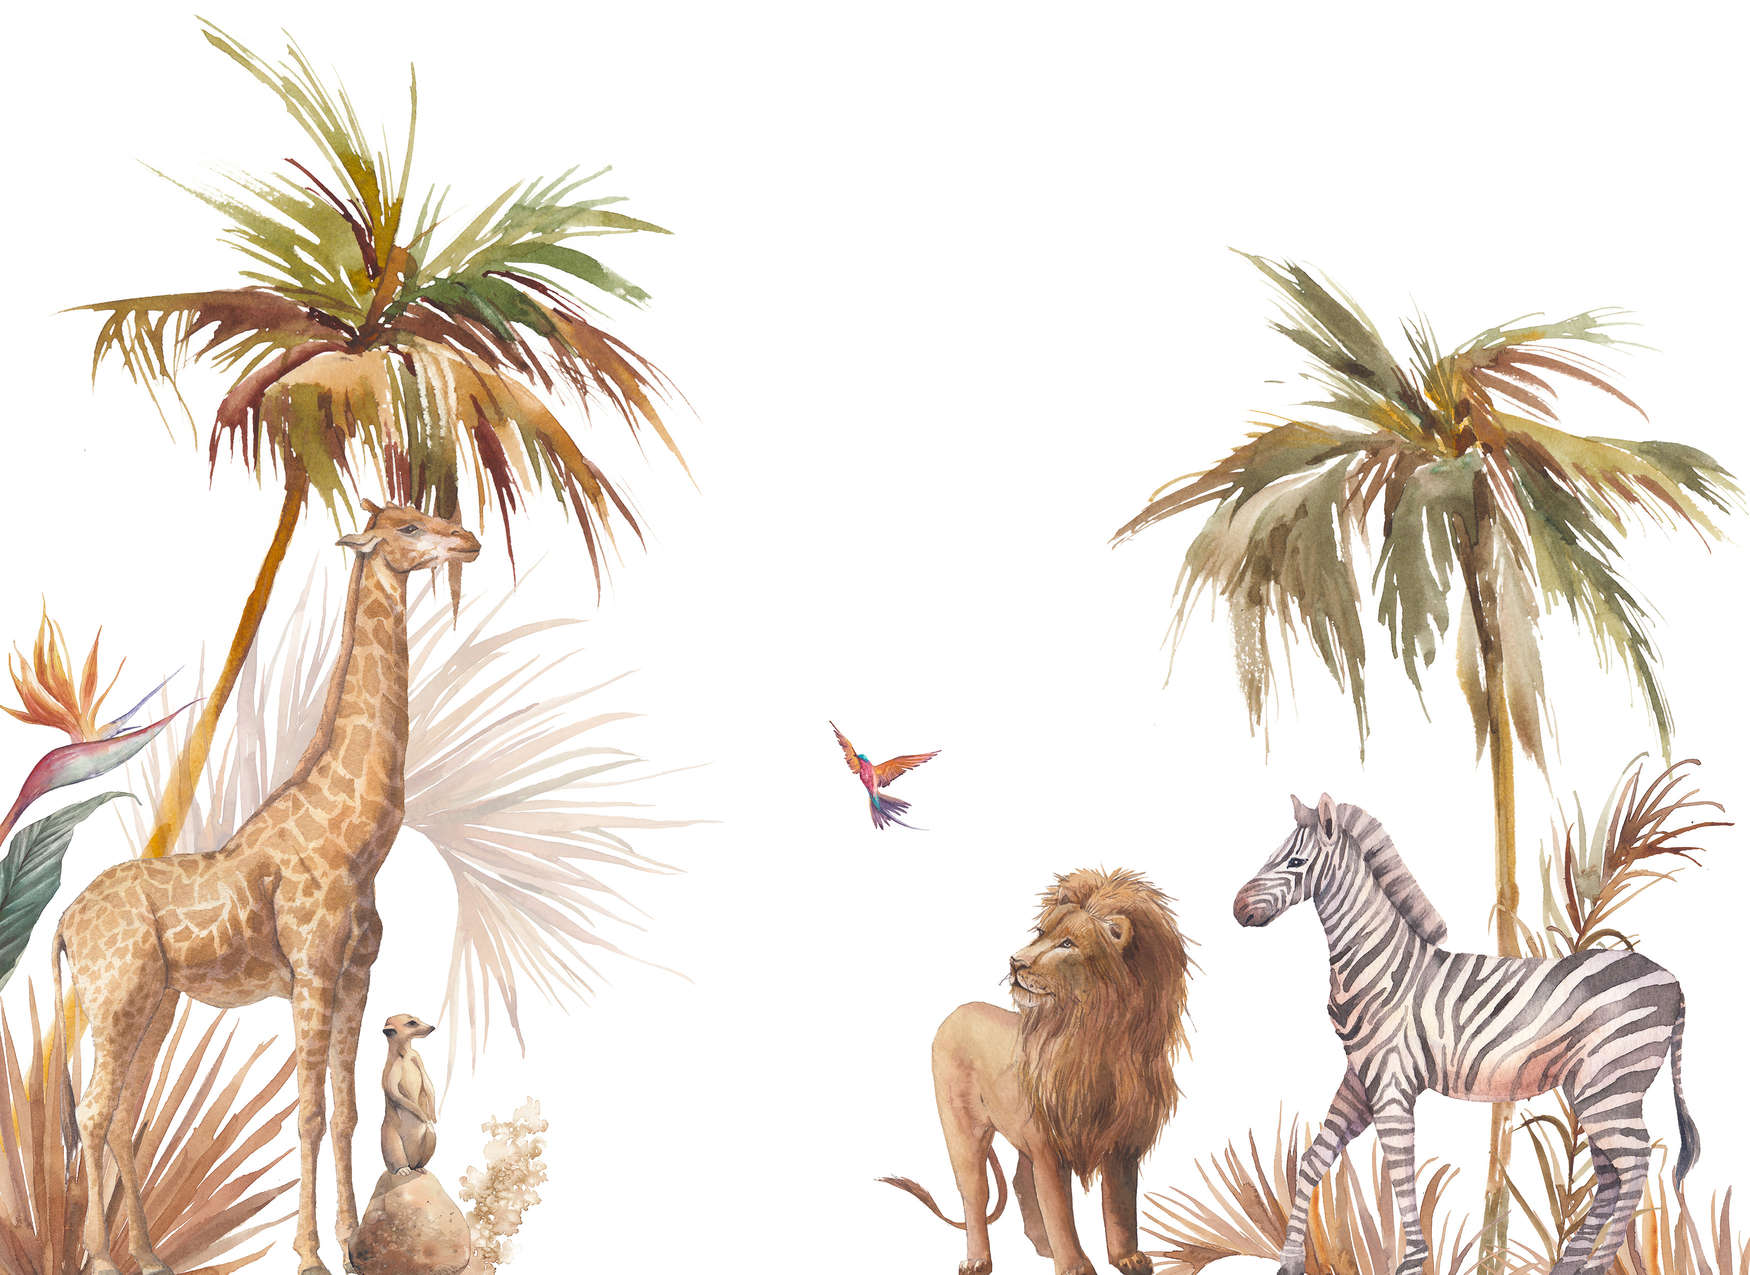             Papier peint panoramique savane africaine pour enfants - beige, vert, blanc
        